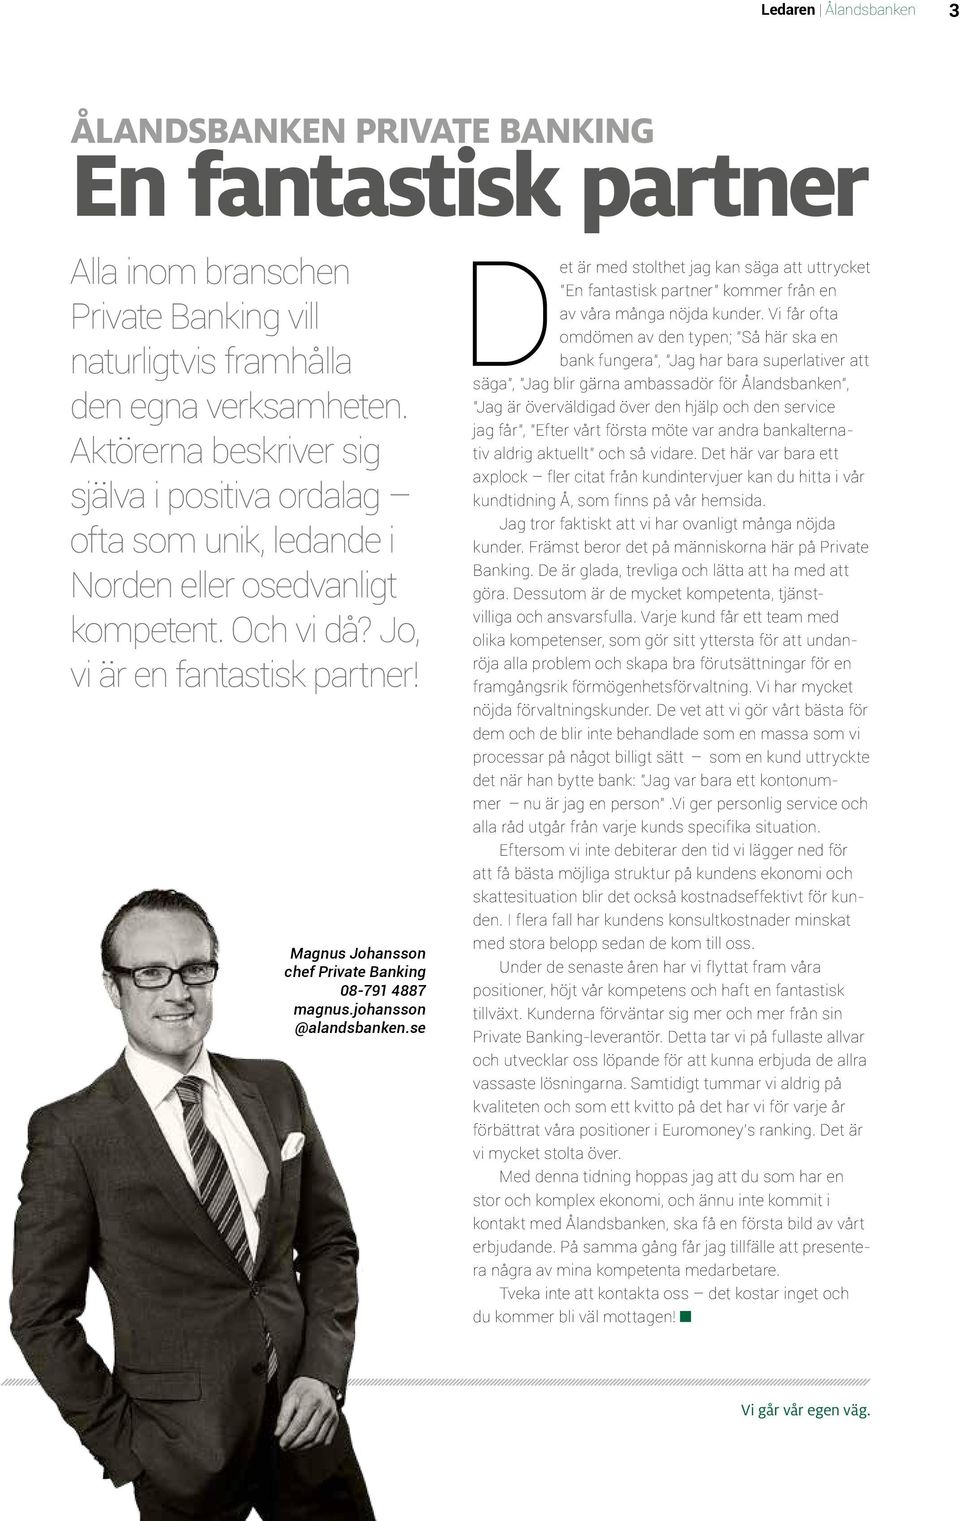 Magnus Johansson chef Private Banking 08-791 4887 magnus.johansson @alandsbanken.se Det är med stolthet jag kan säga att uttrycket En fantastisk partner kommer från en av våra många nöjda kunder.